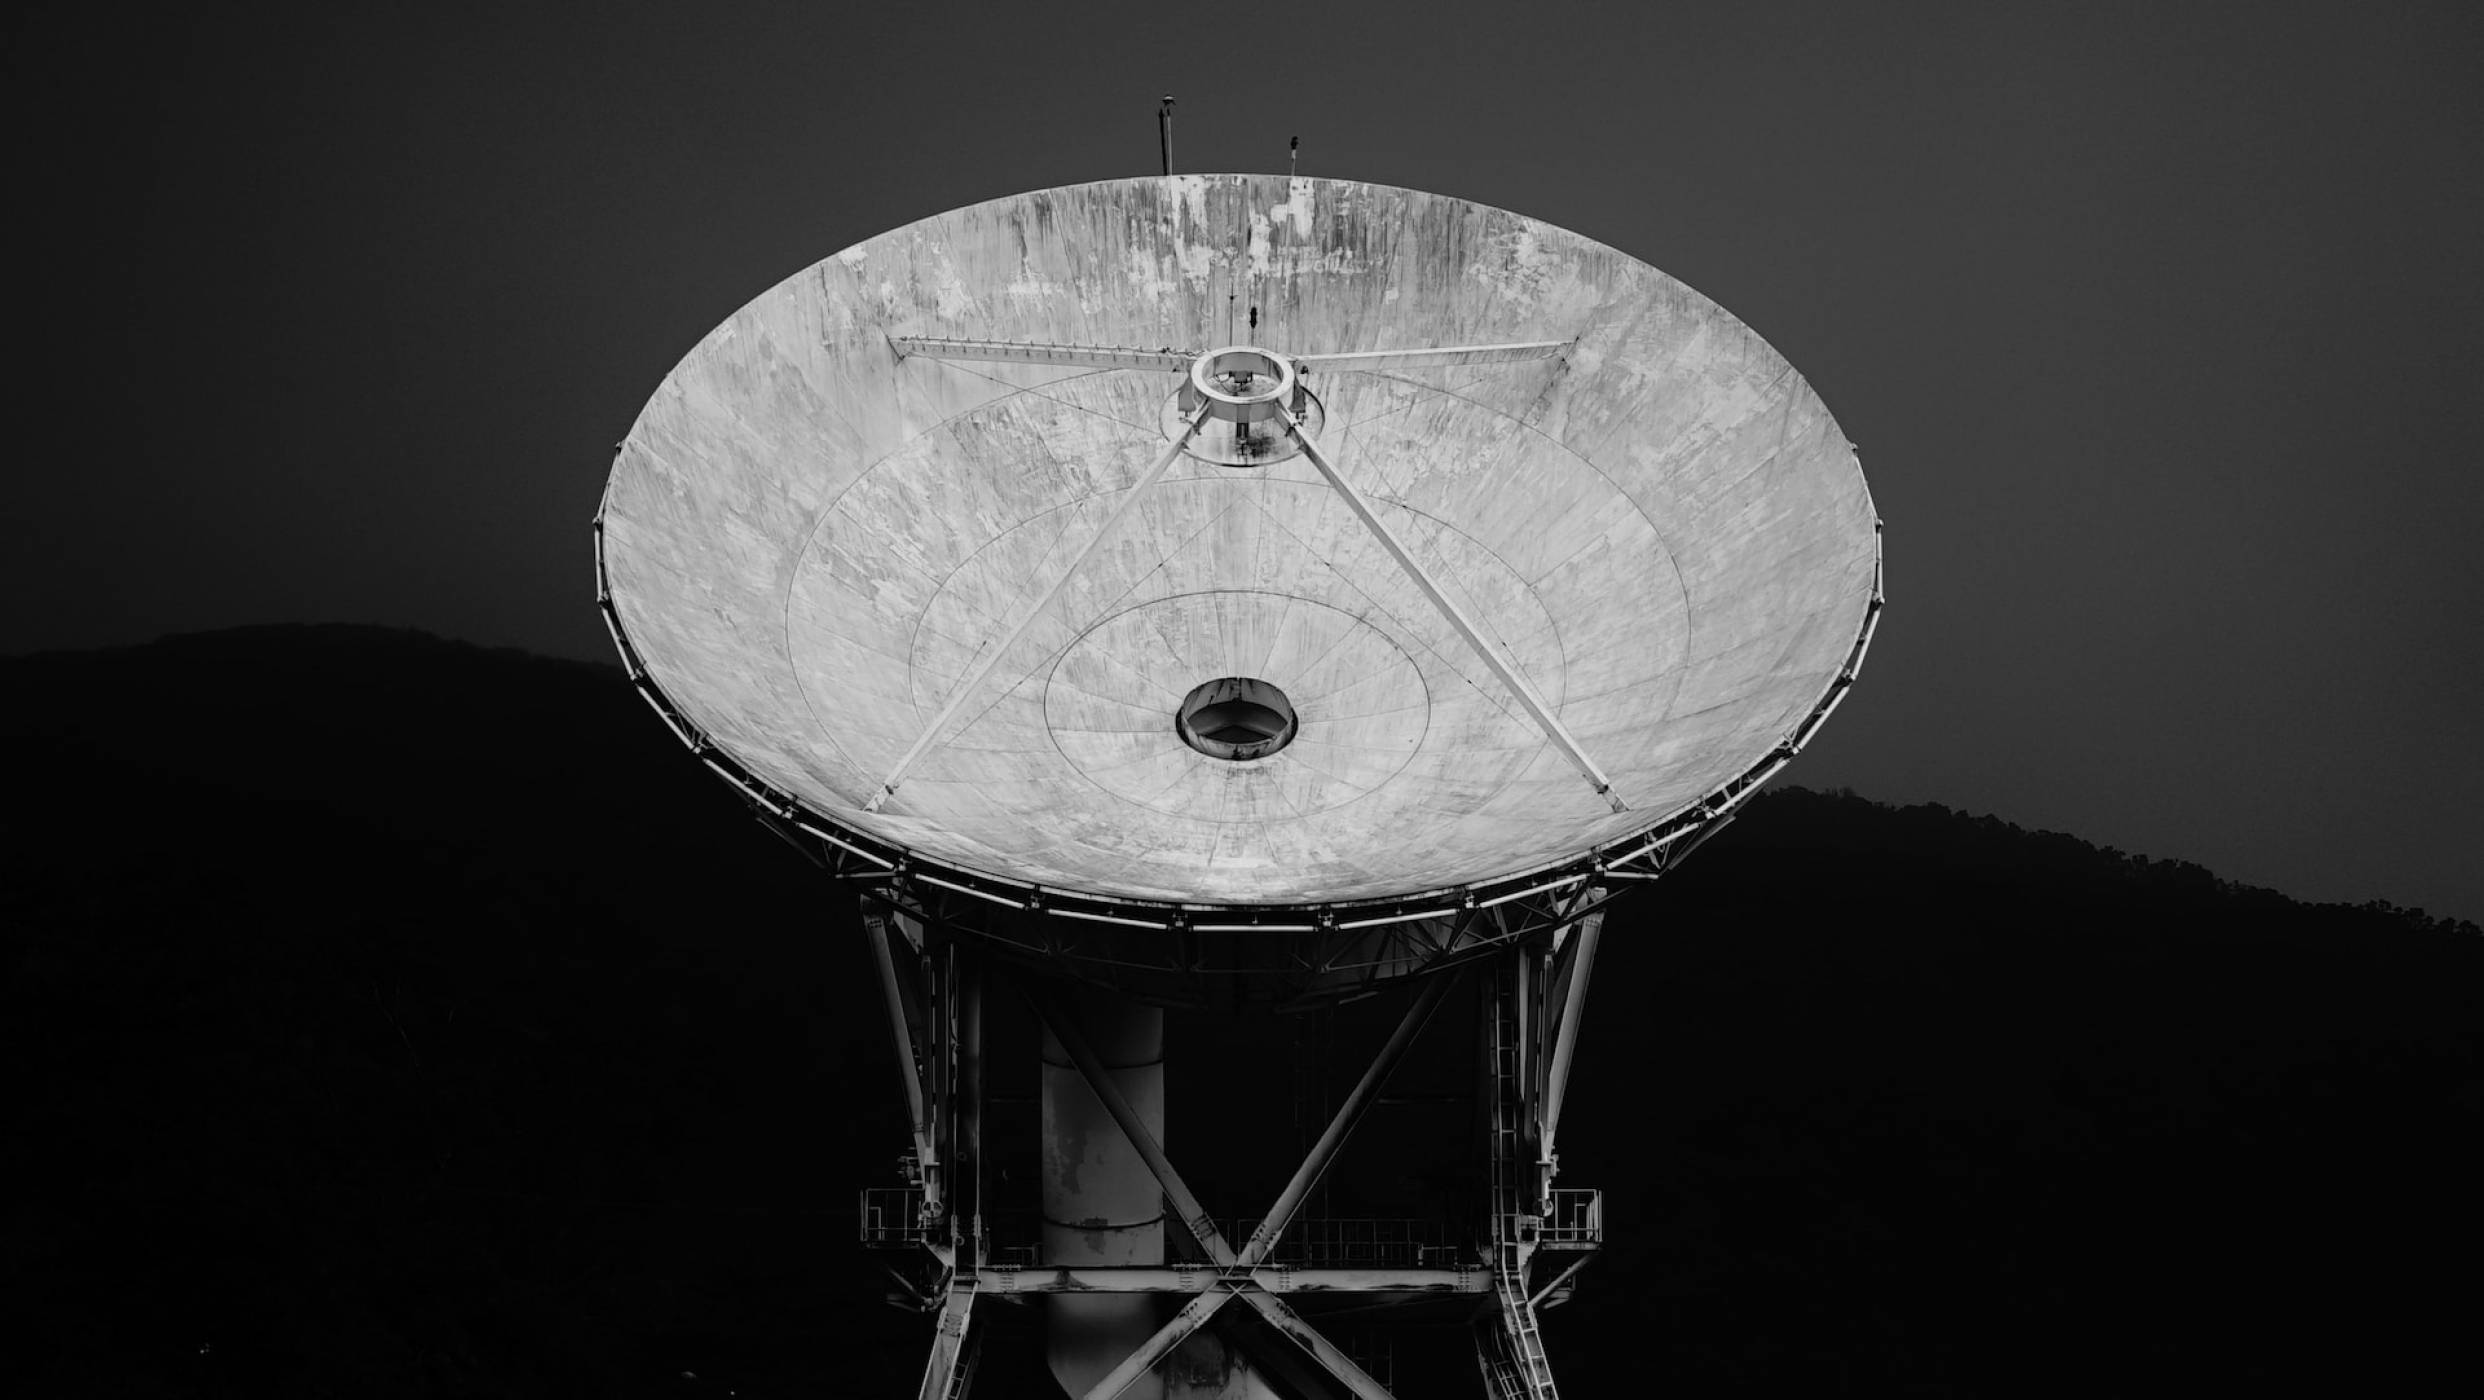 Историческо: Проведоха първото обаждане през сателит с помощта на обикновен телефон